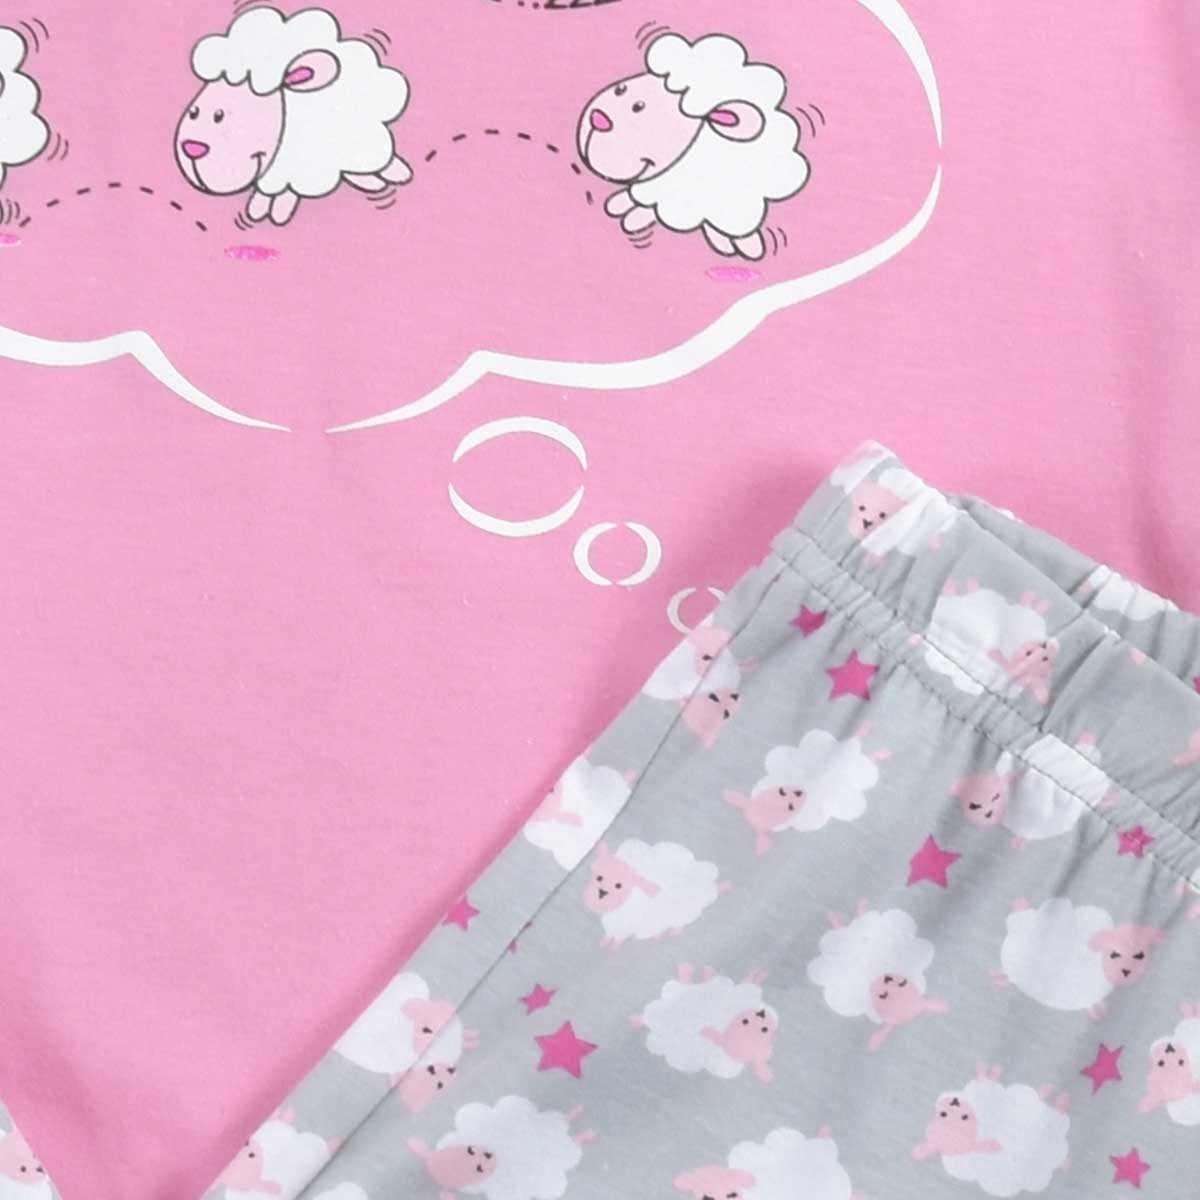 Pijama para Dama Chifon Playera Y Capri Estampado Borregos Isotoner